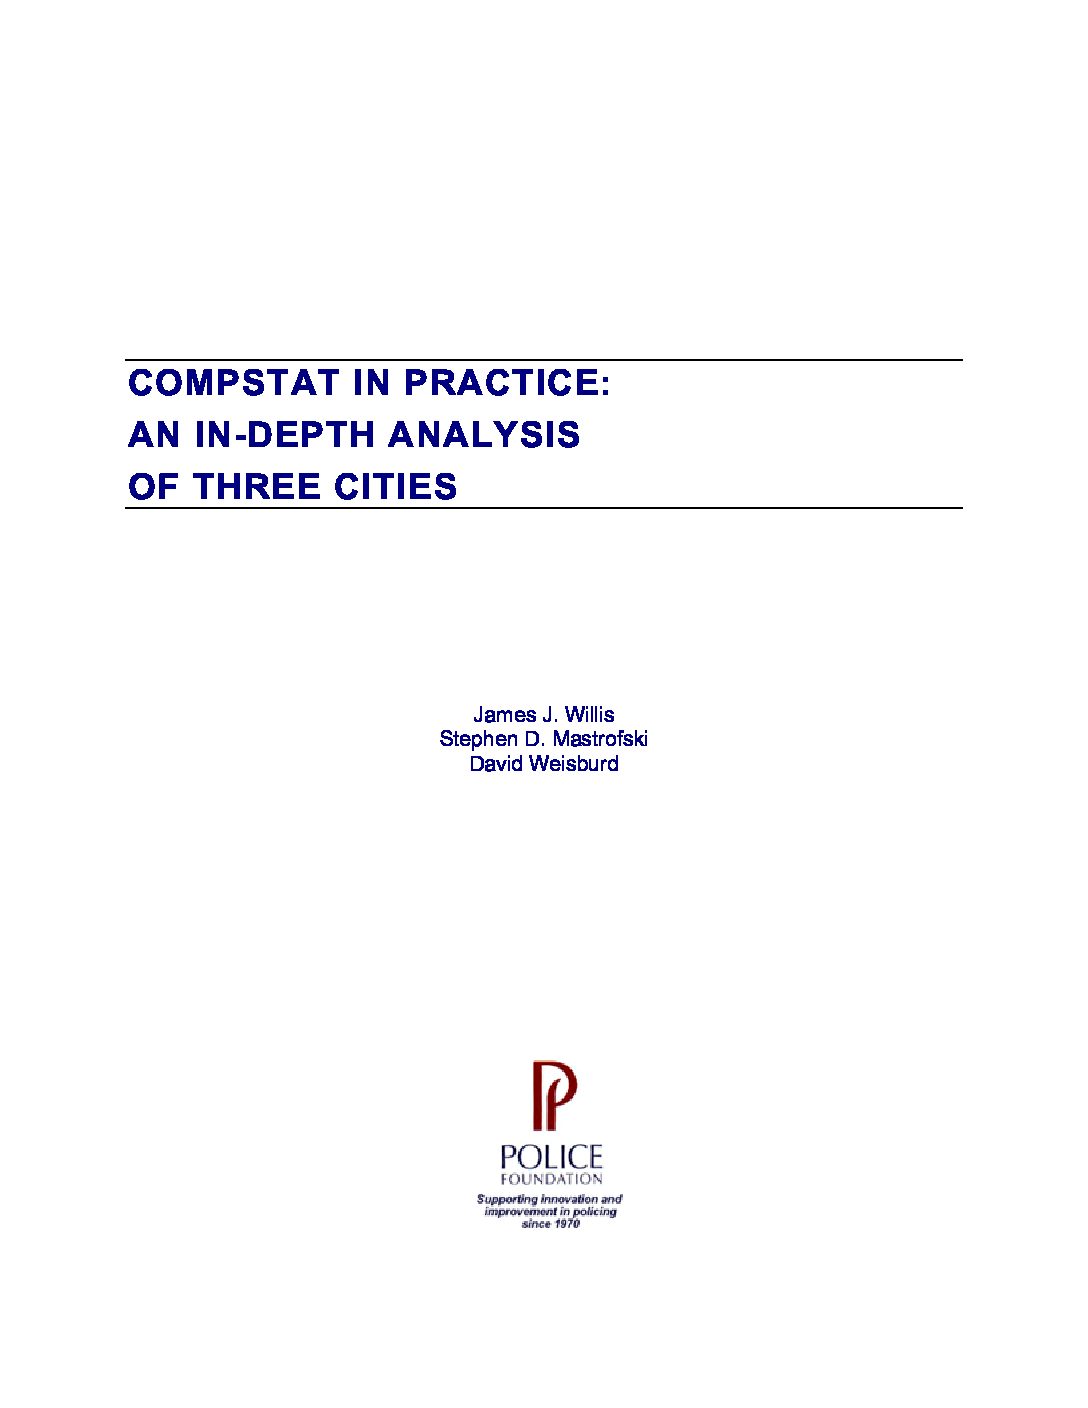 Willis-et-al.-2004-Compstat-in-Practice-pdf